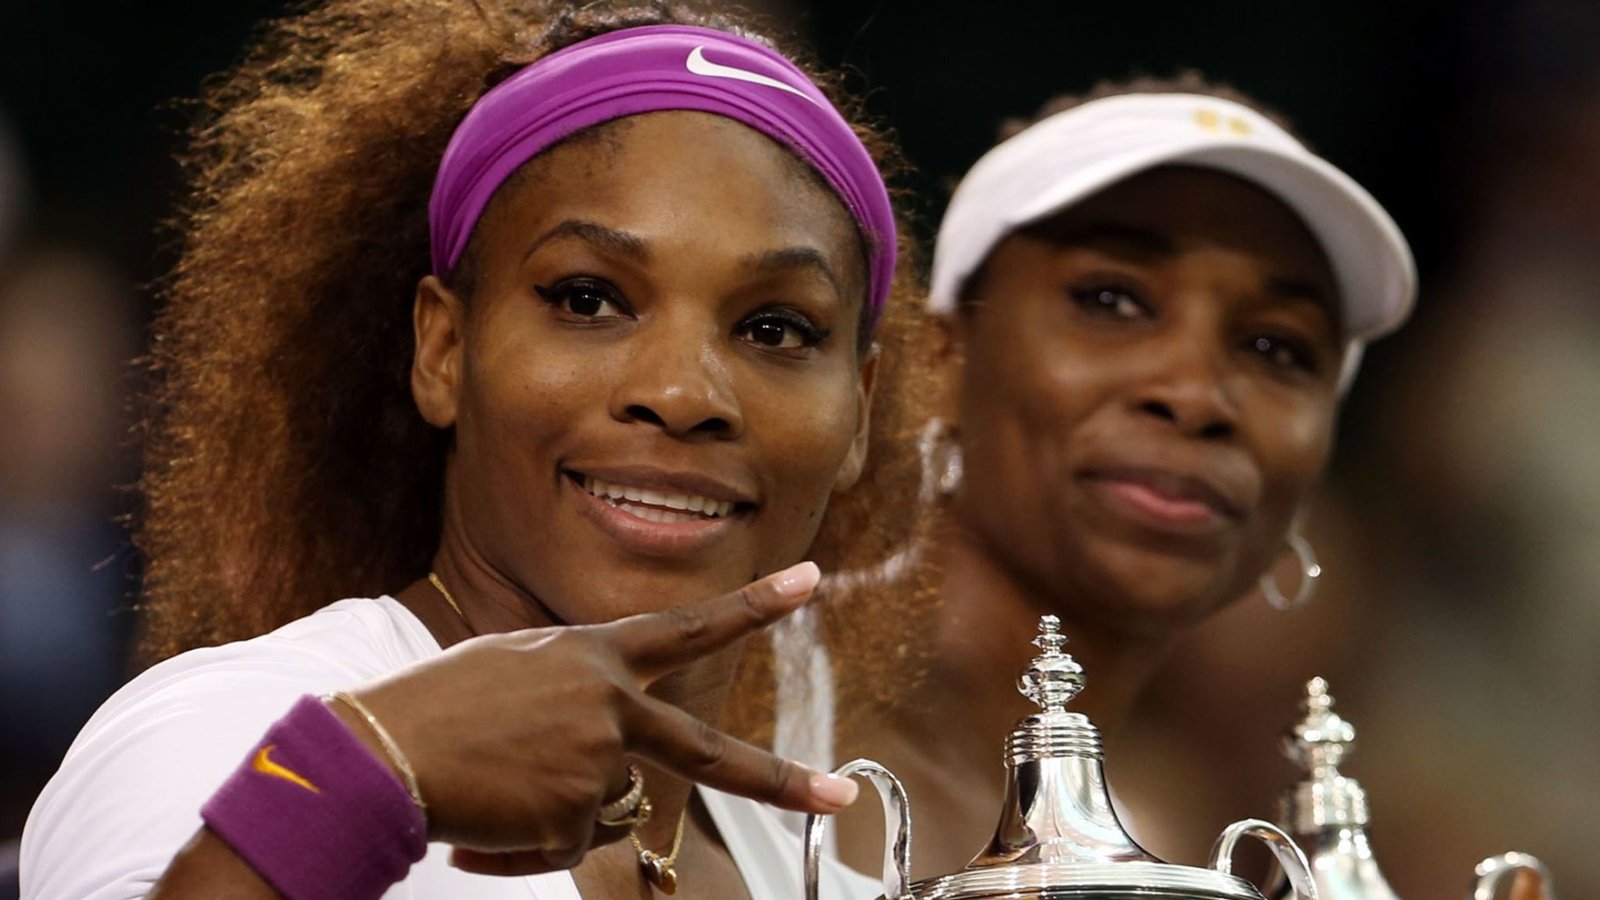 Serena Williams with Venus Williams